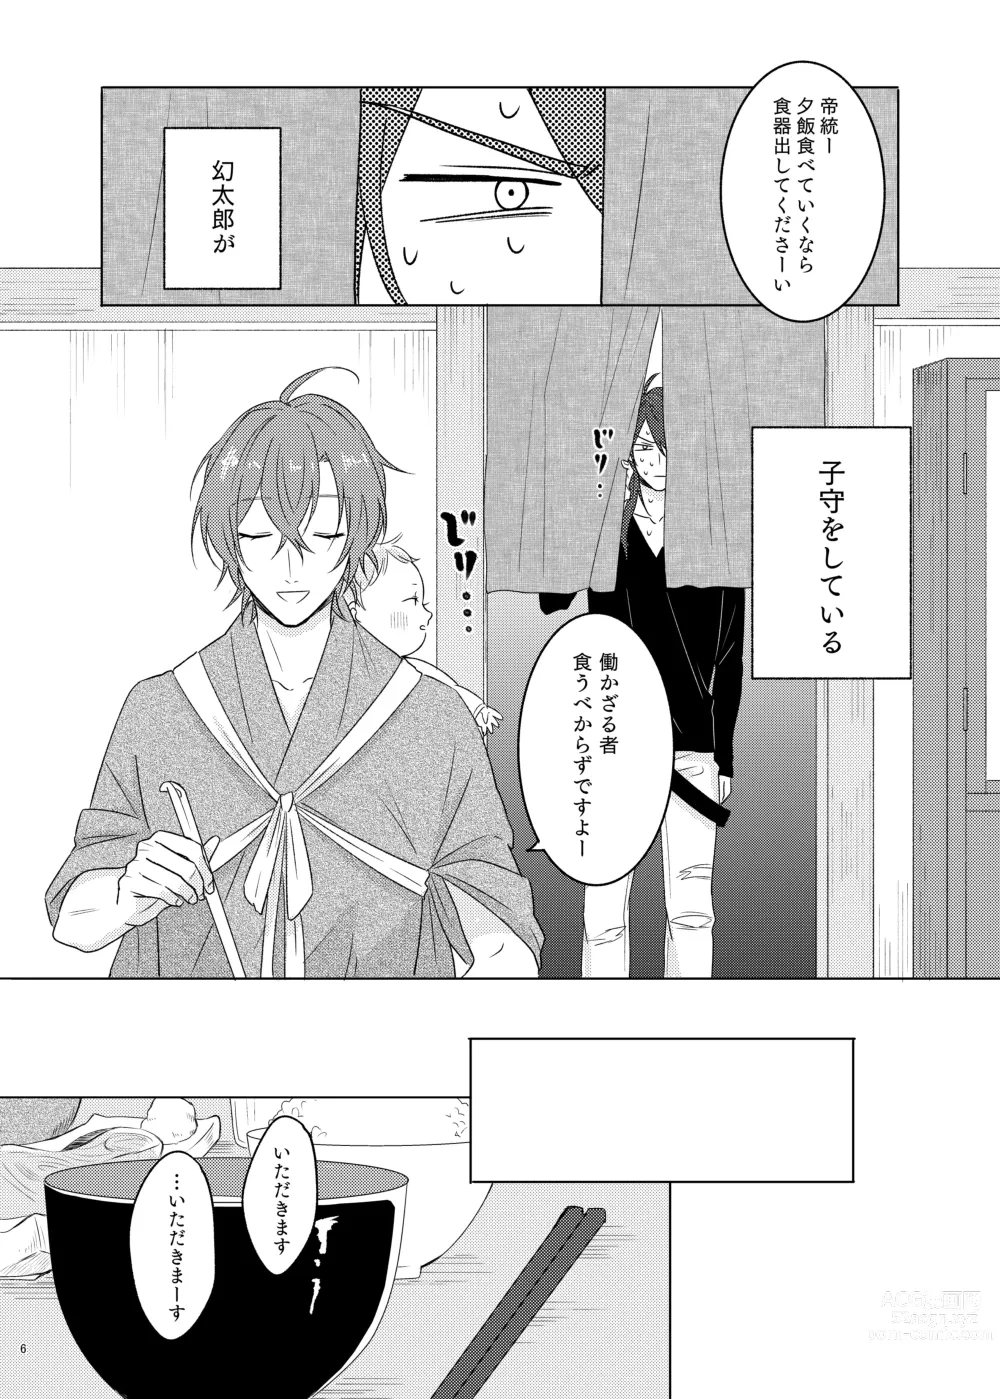 Page 6 of doujinshi Kami sama no ko